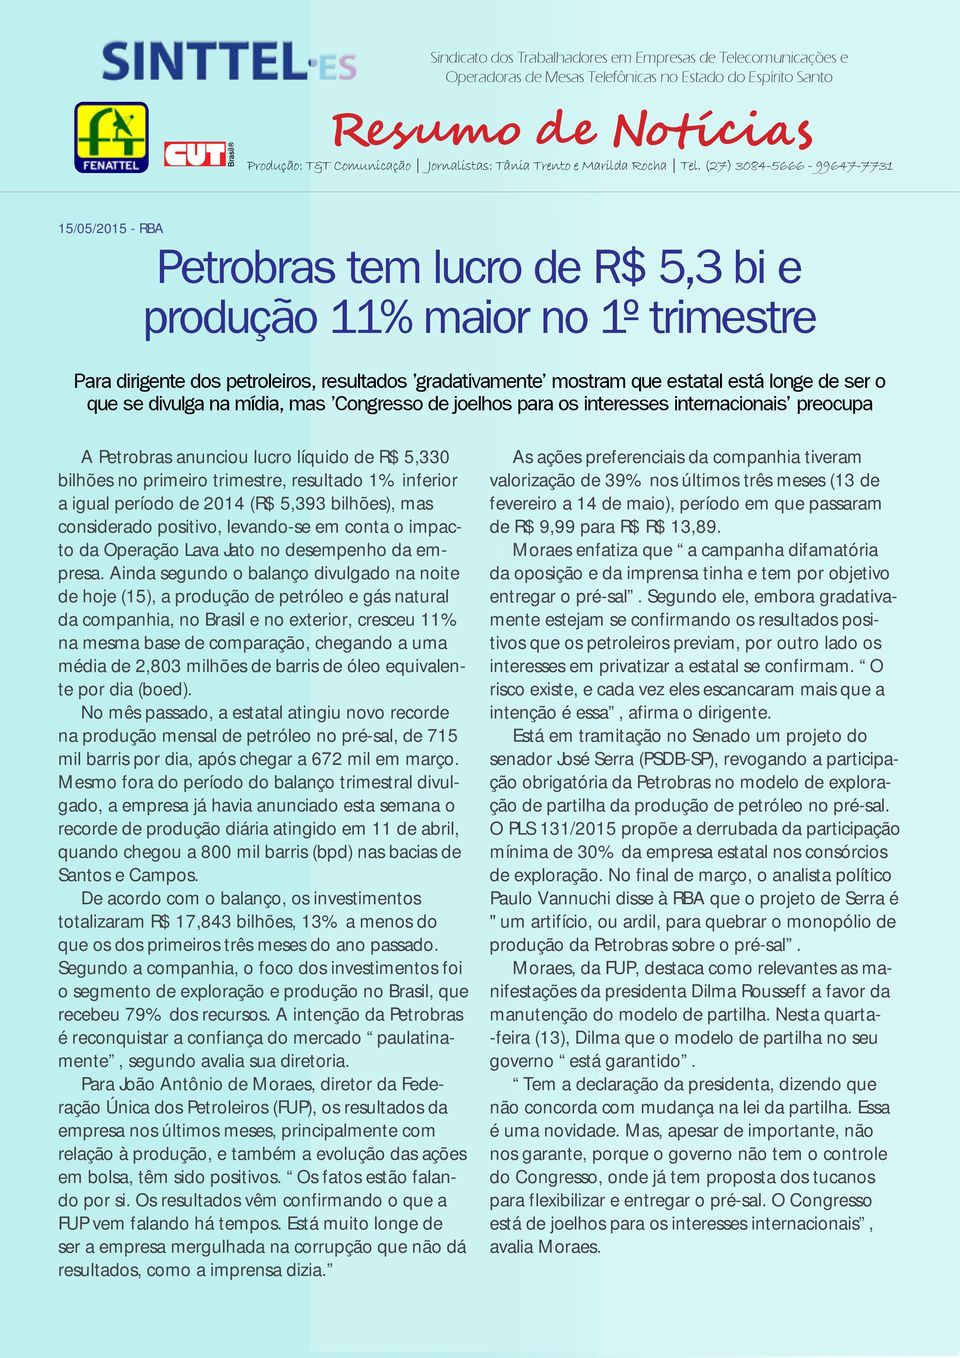 período de 2014 (R$ 5,393 bilhões), mas considerado positivo, levando-se em conta o impacto da Operação Lava Jato no desempenho da empresa.